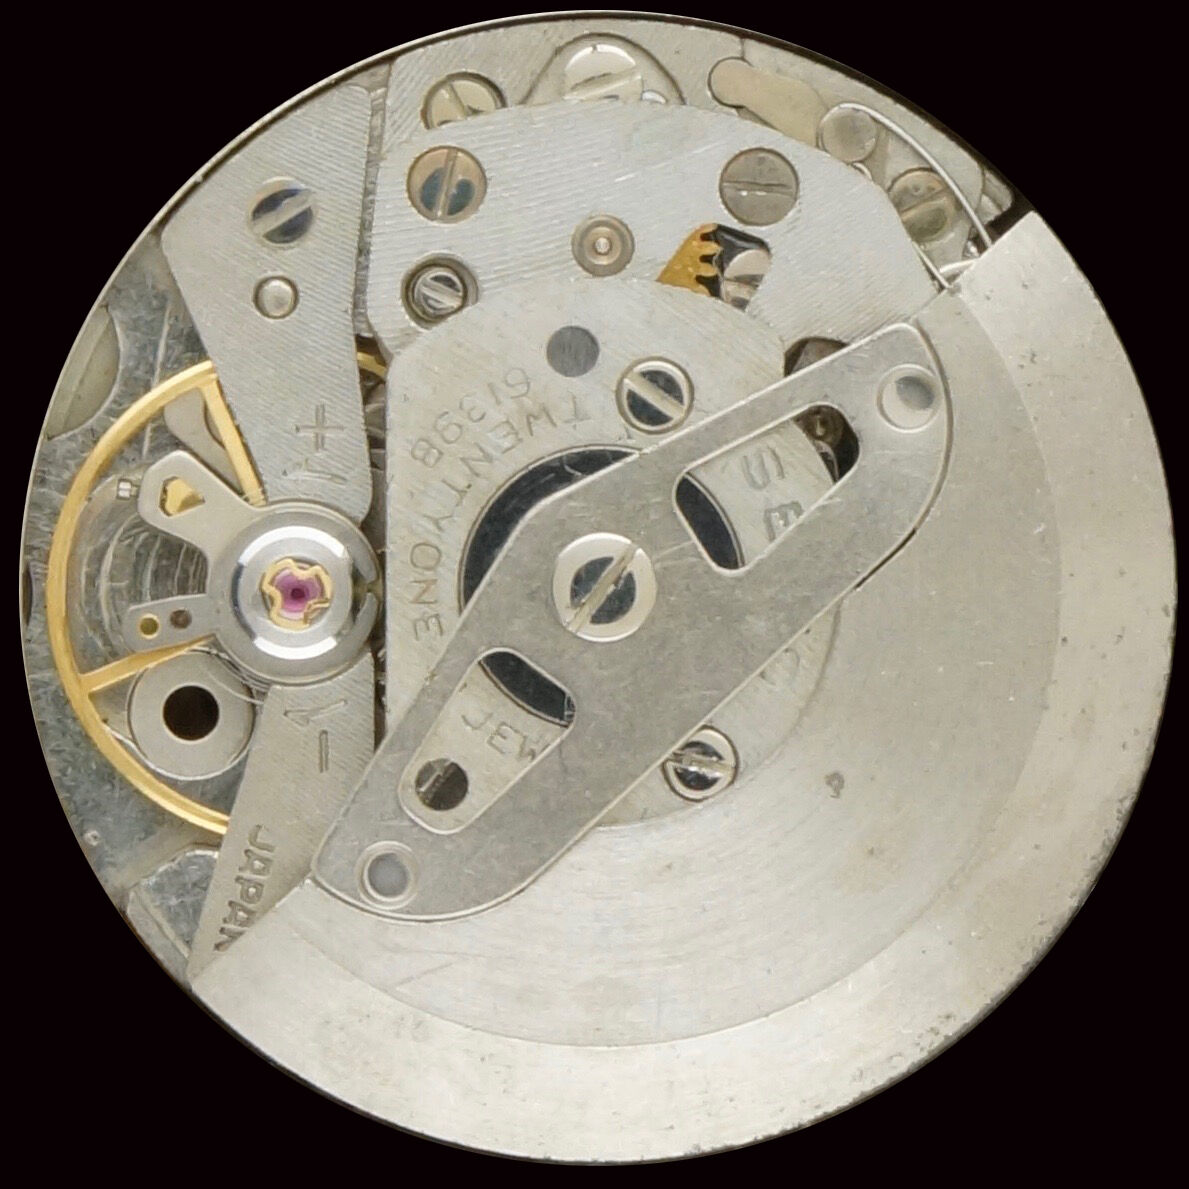 Seiko 6139 A | A La Clinique Horlogère, réparation et vente de montres,  Porrentruy, Jura, Suisse